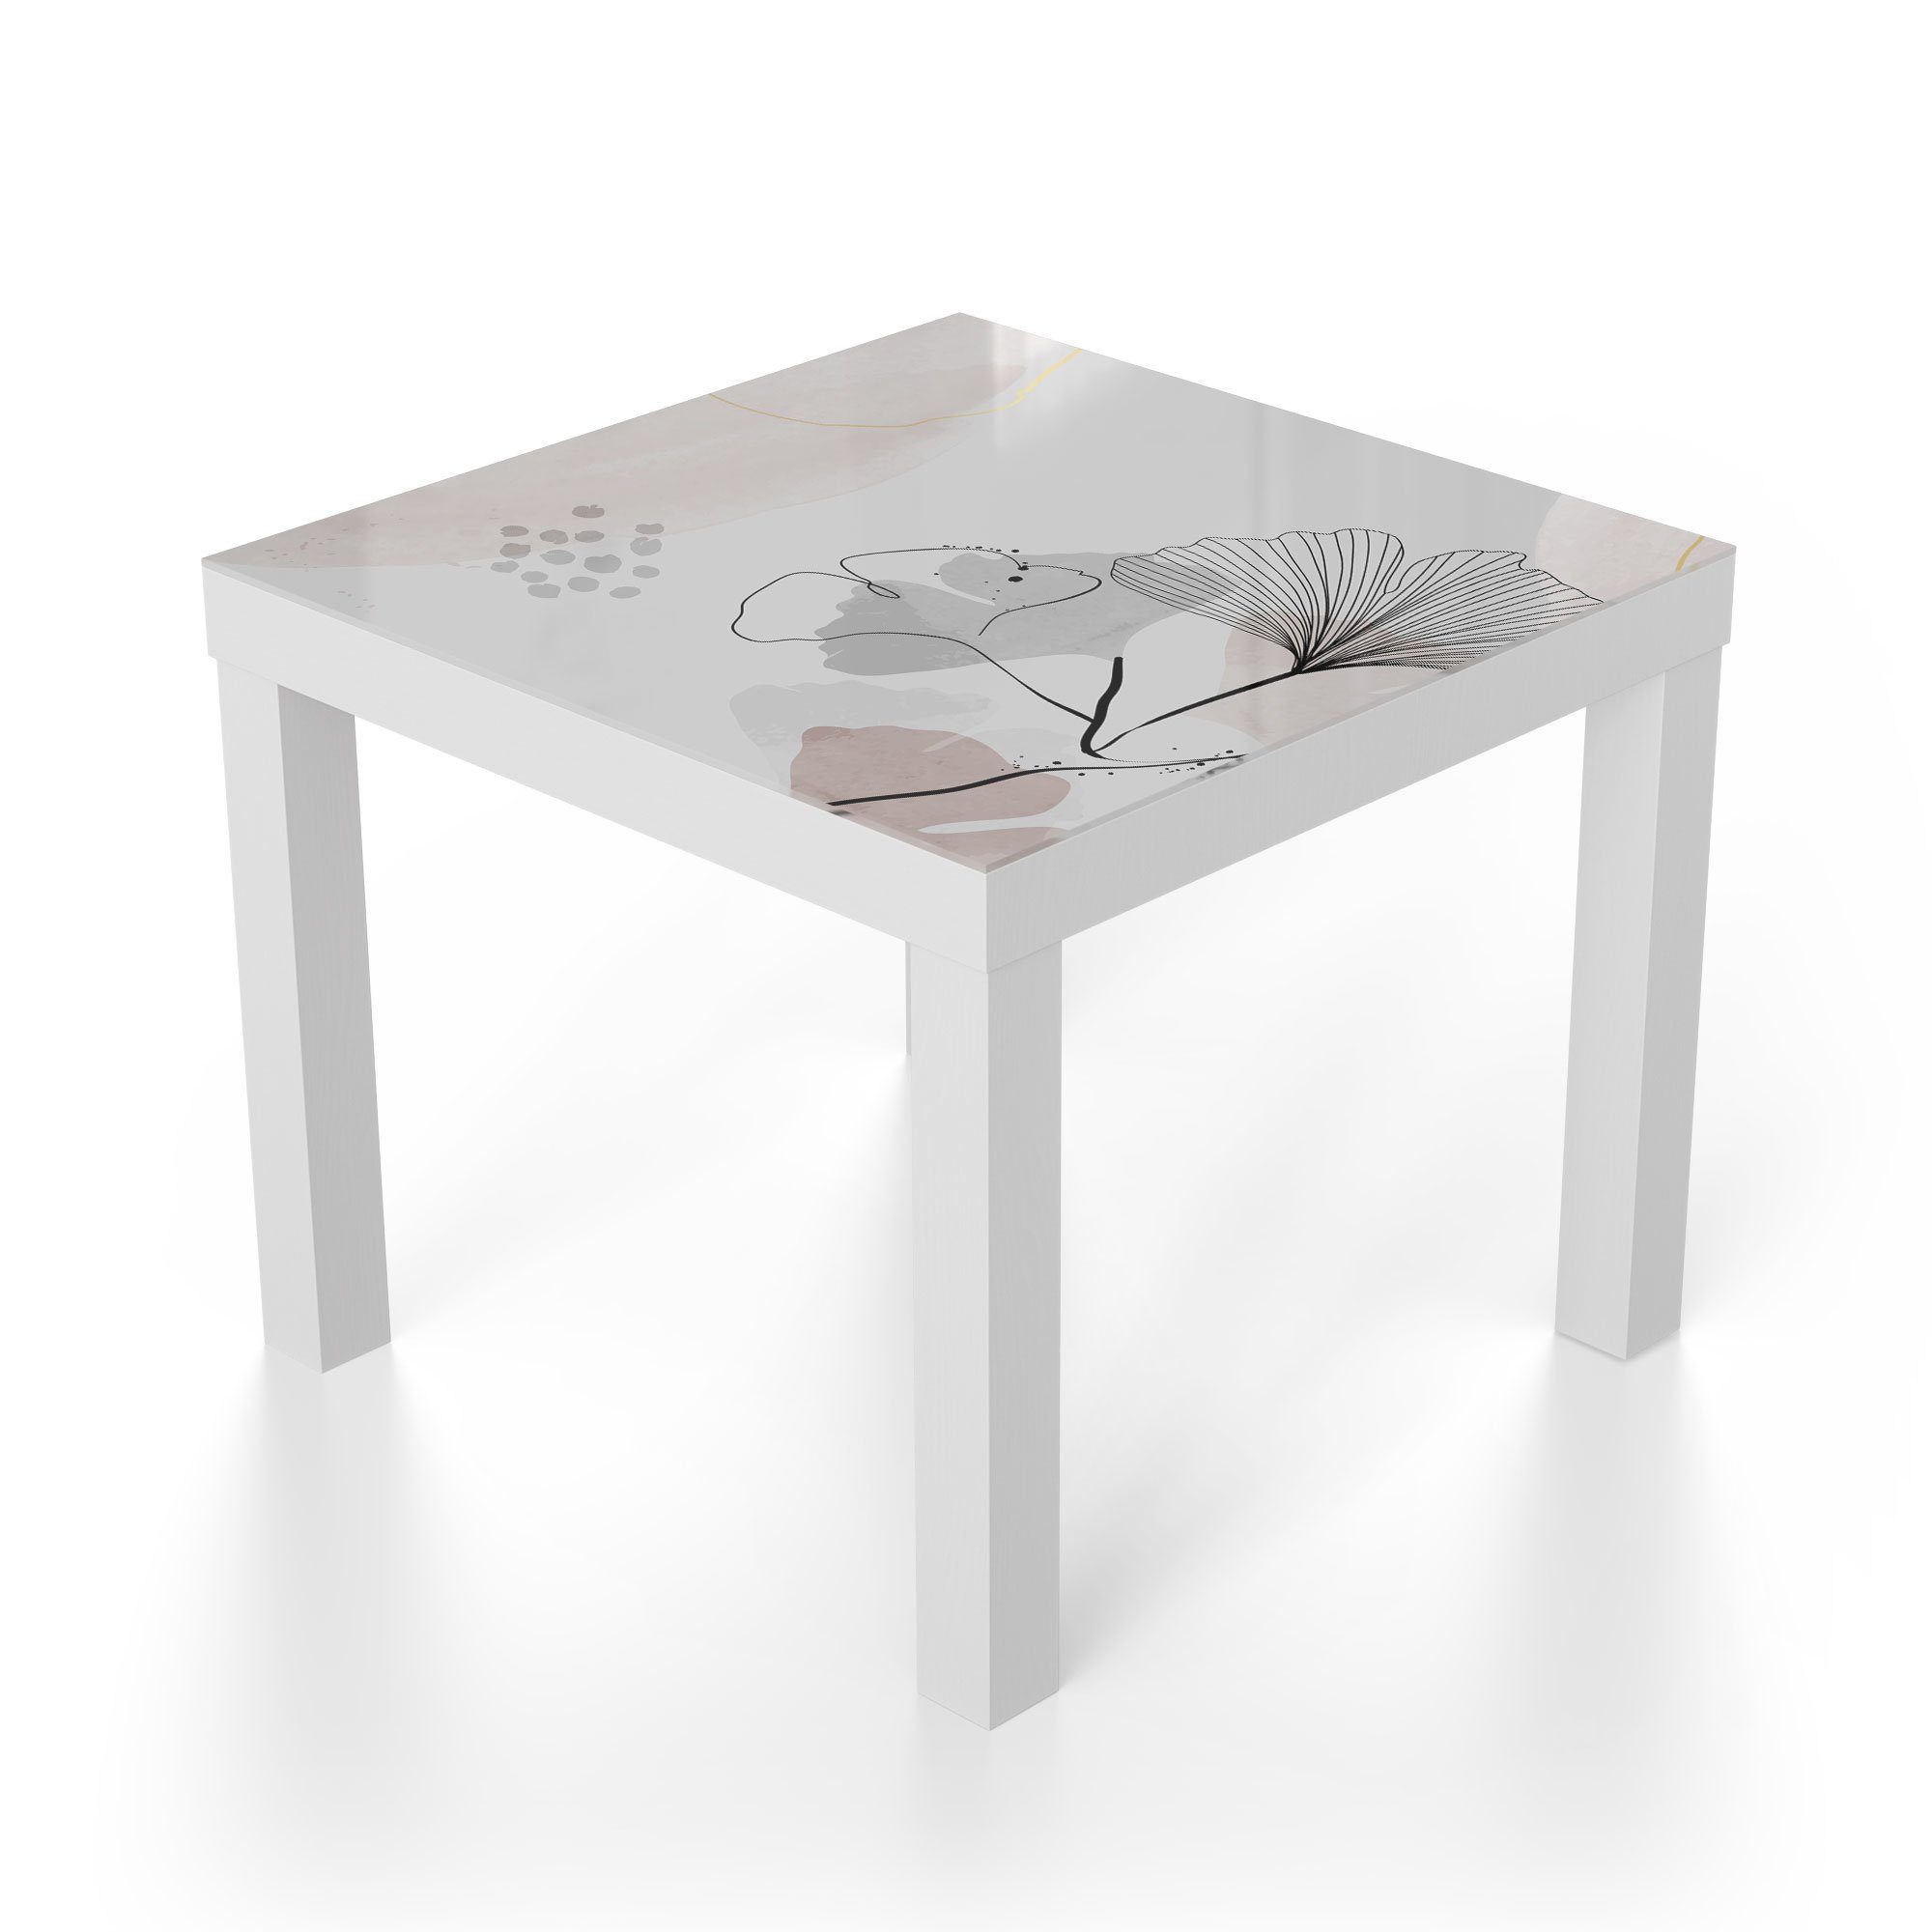 'Dekorativer Glas Weiß DEQORI Couchtisch Beistelltisch Gingko-Banner', Glastisch modern